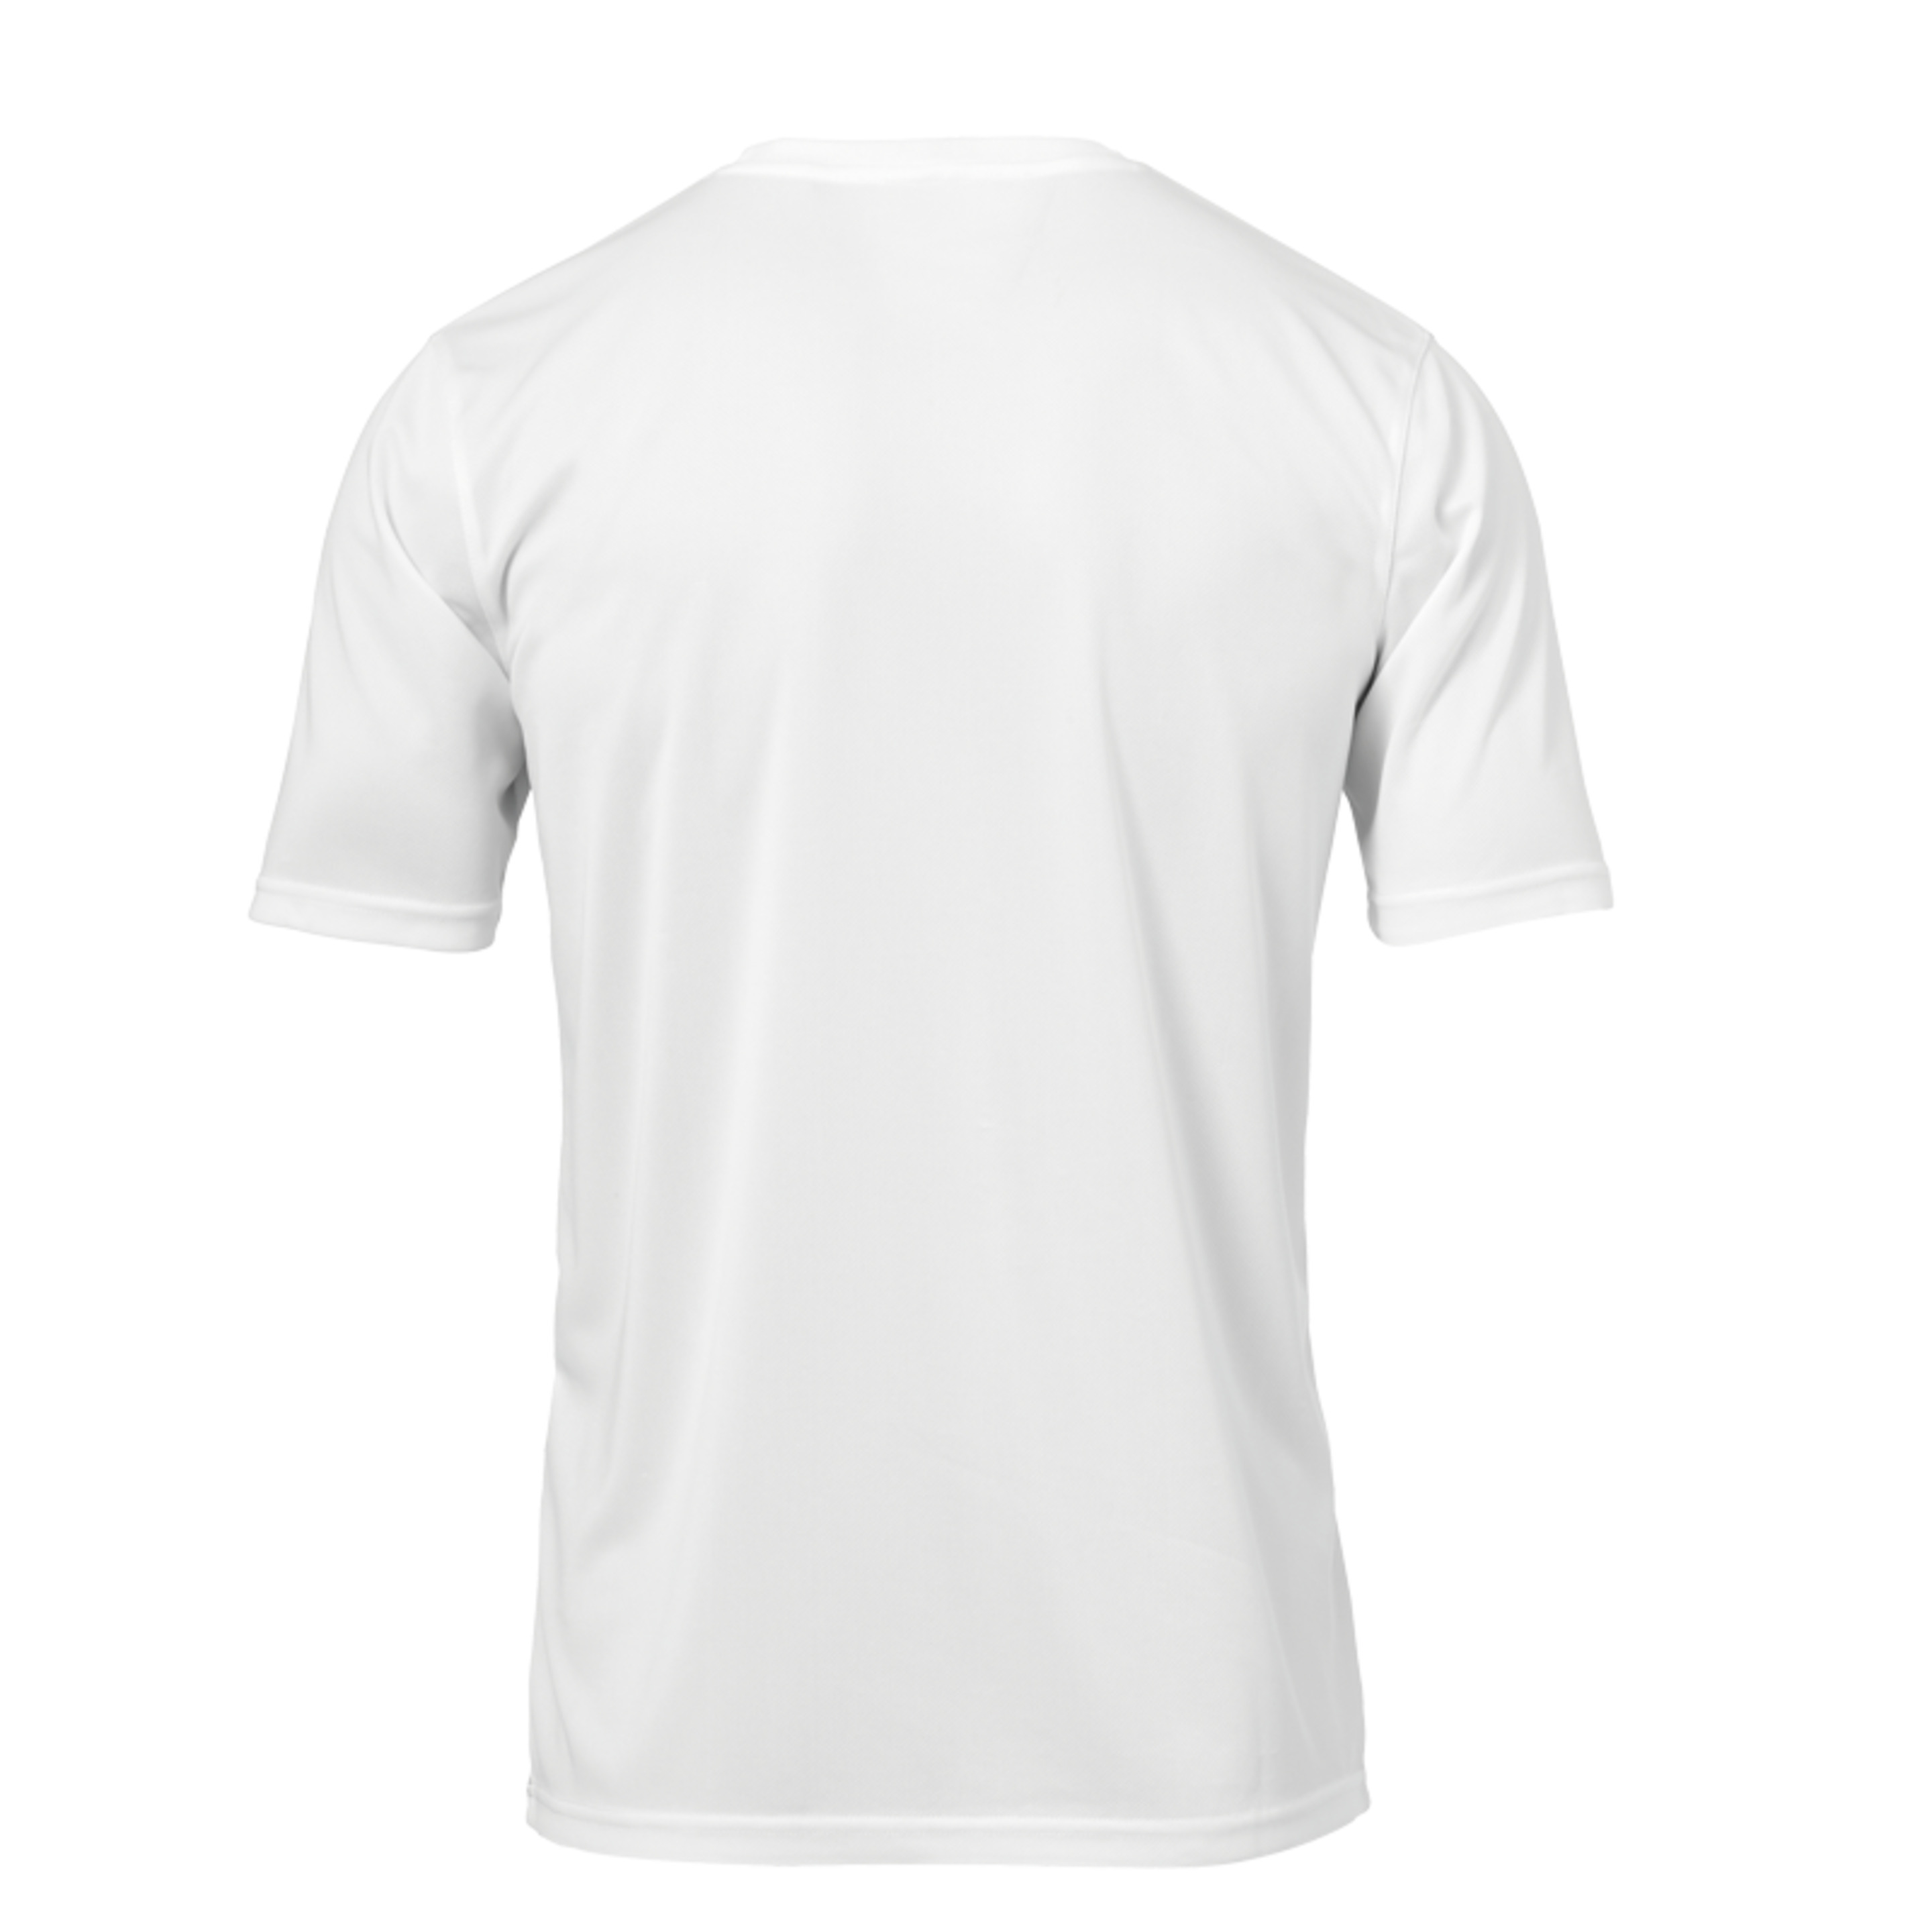 Score Training T-shirt Blanco/negro Uhlsport